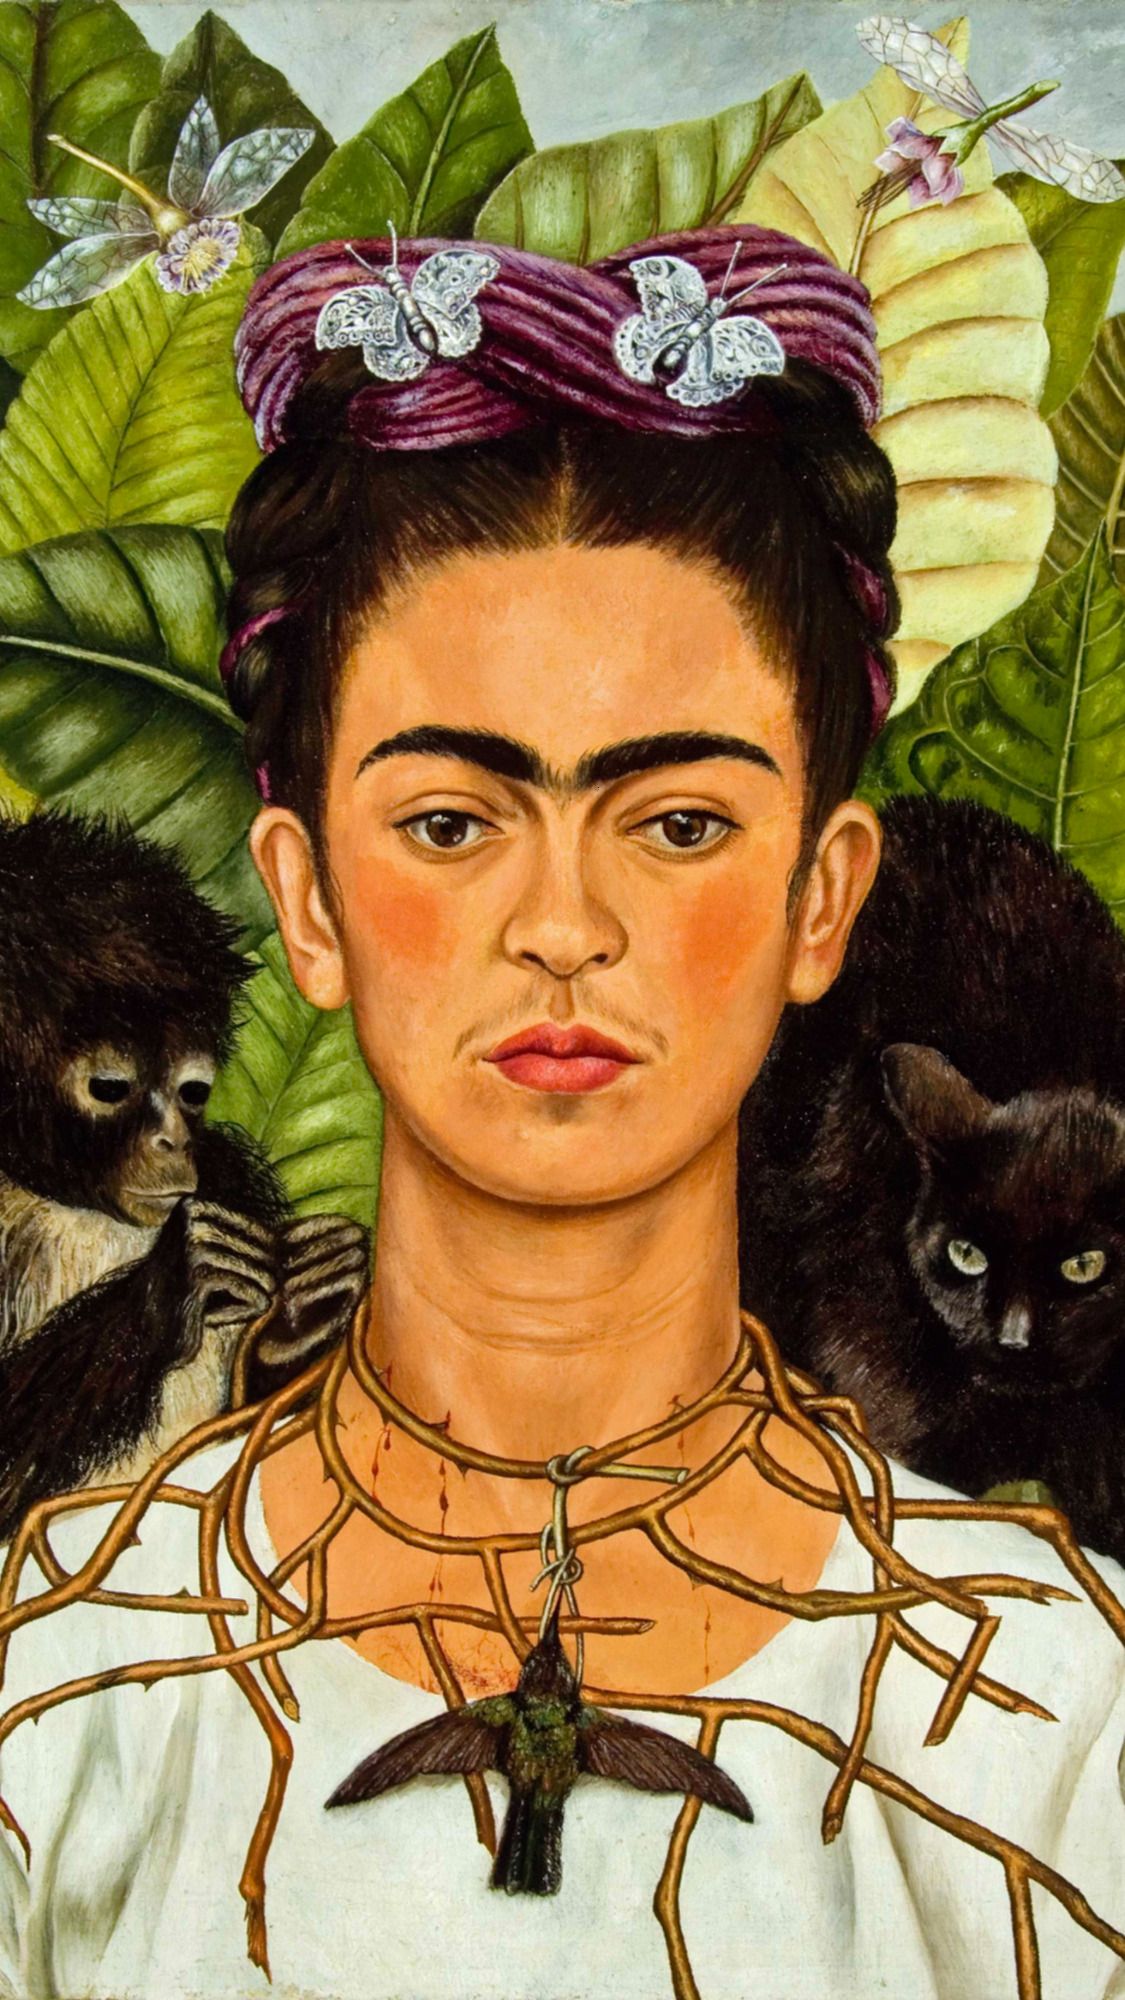 A painting of frida kahlo with monkeys - Frida Kahlo